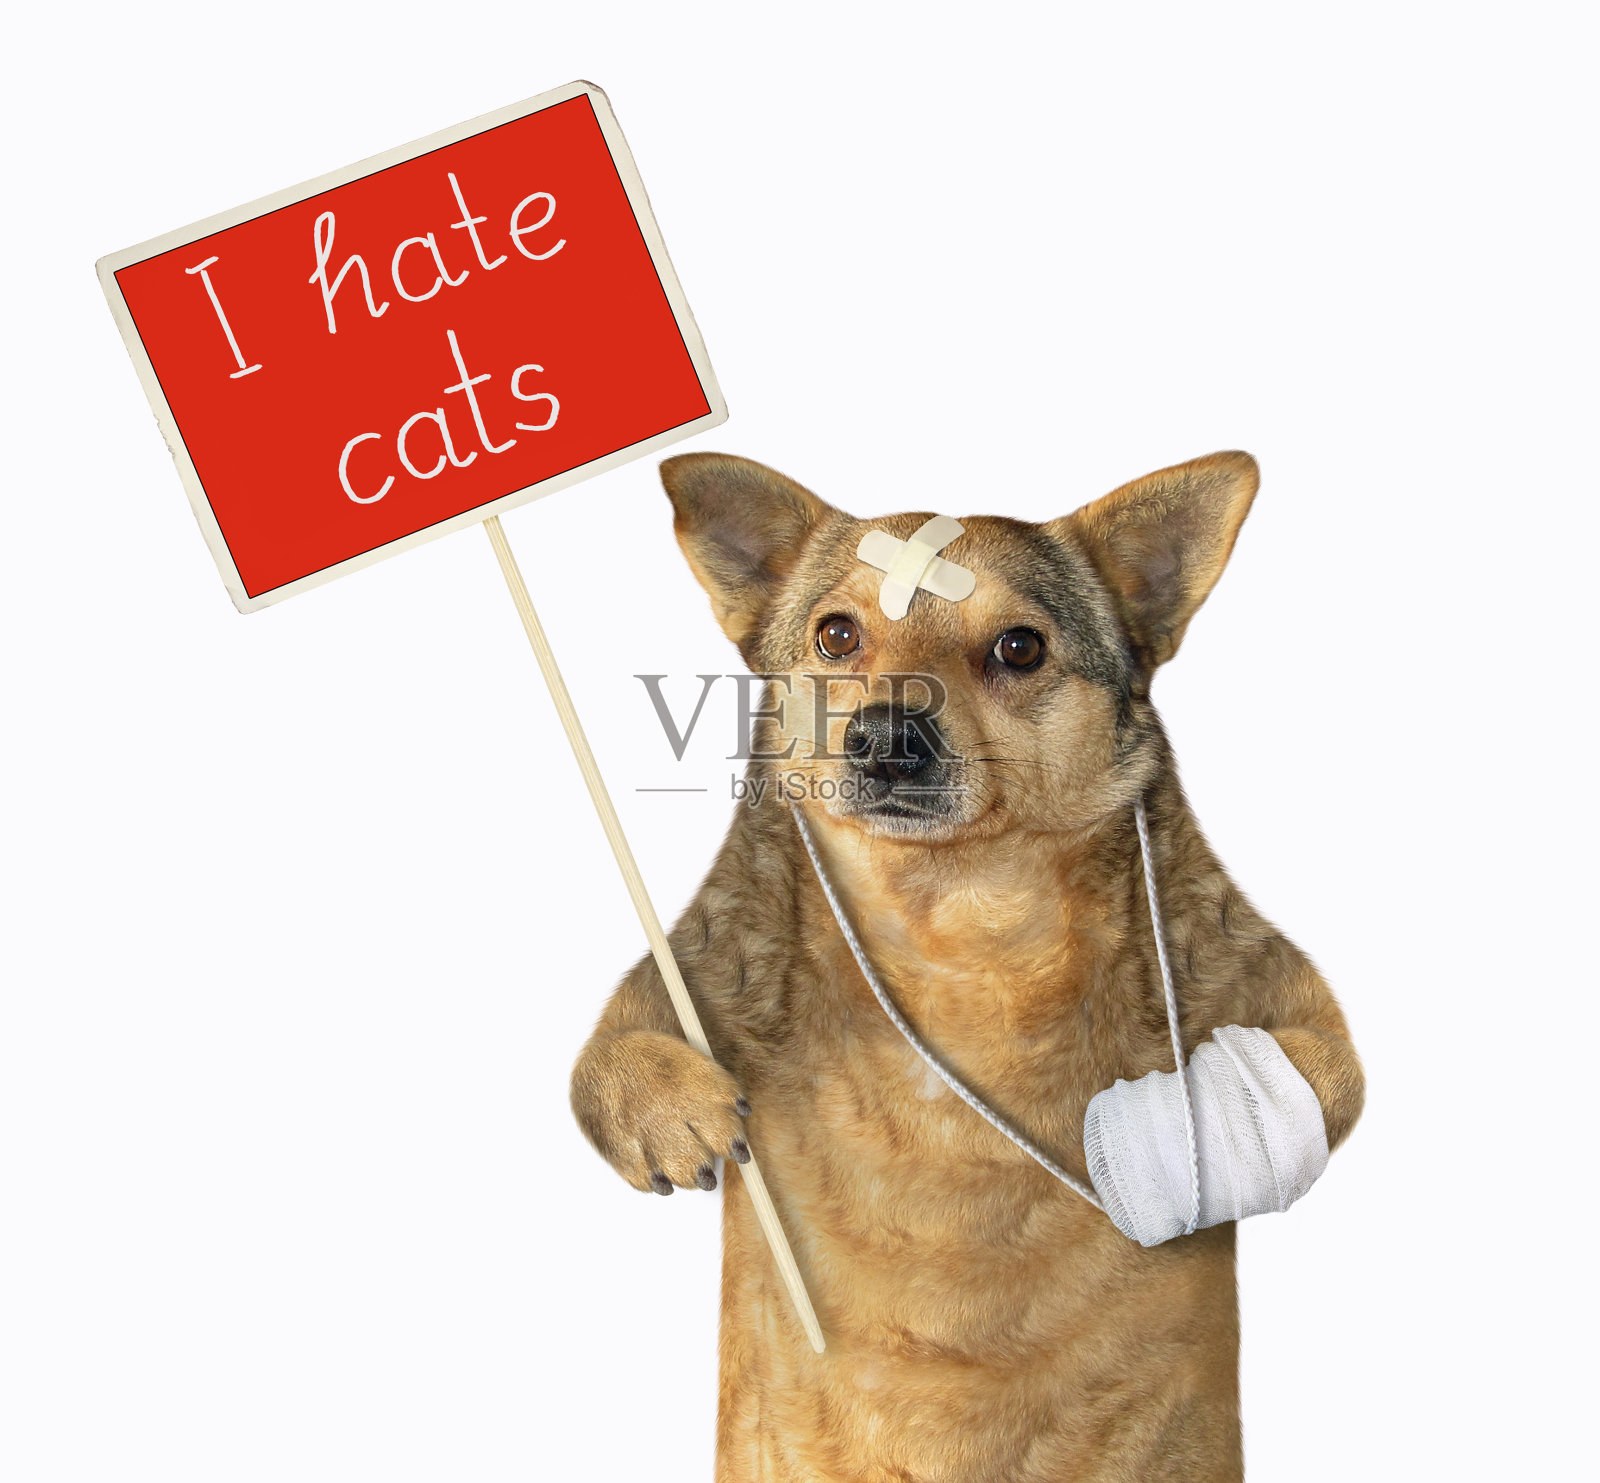 一只狗举着红色抗议标语照片摄影图片